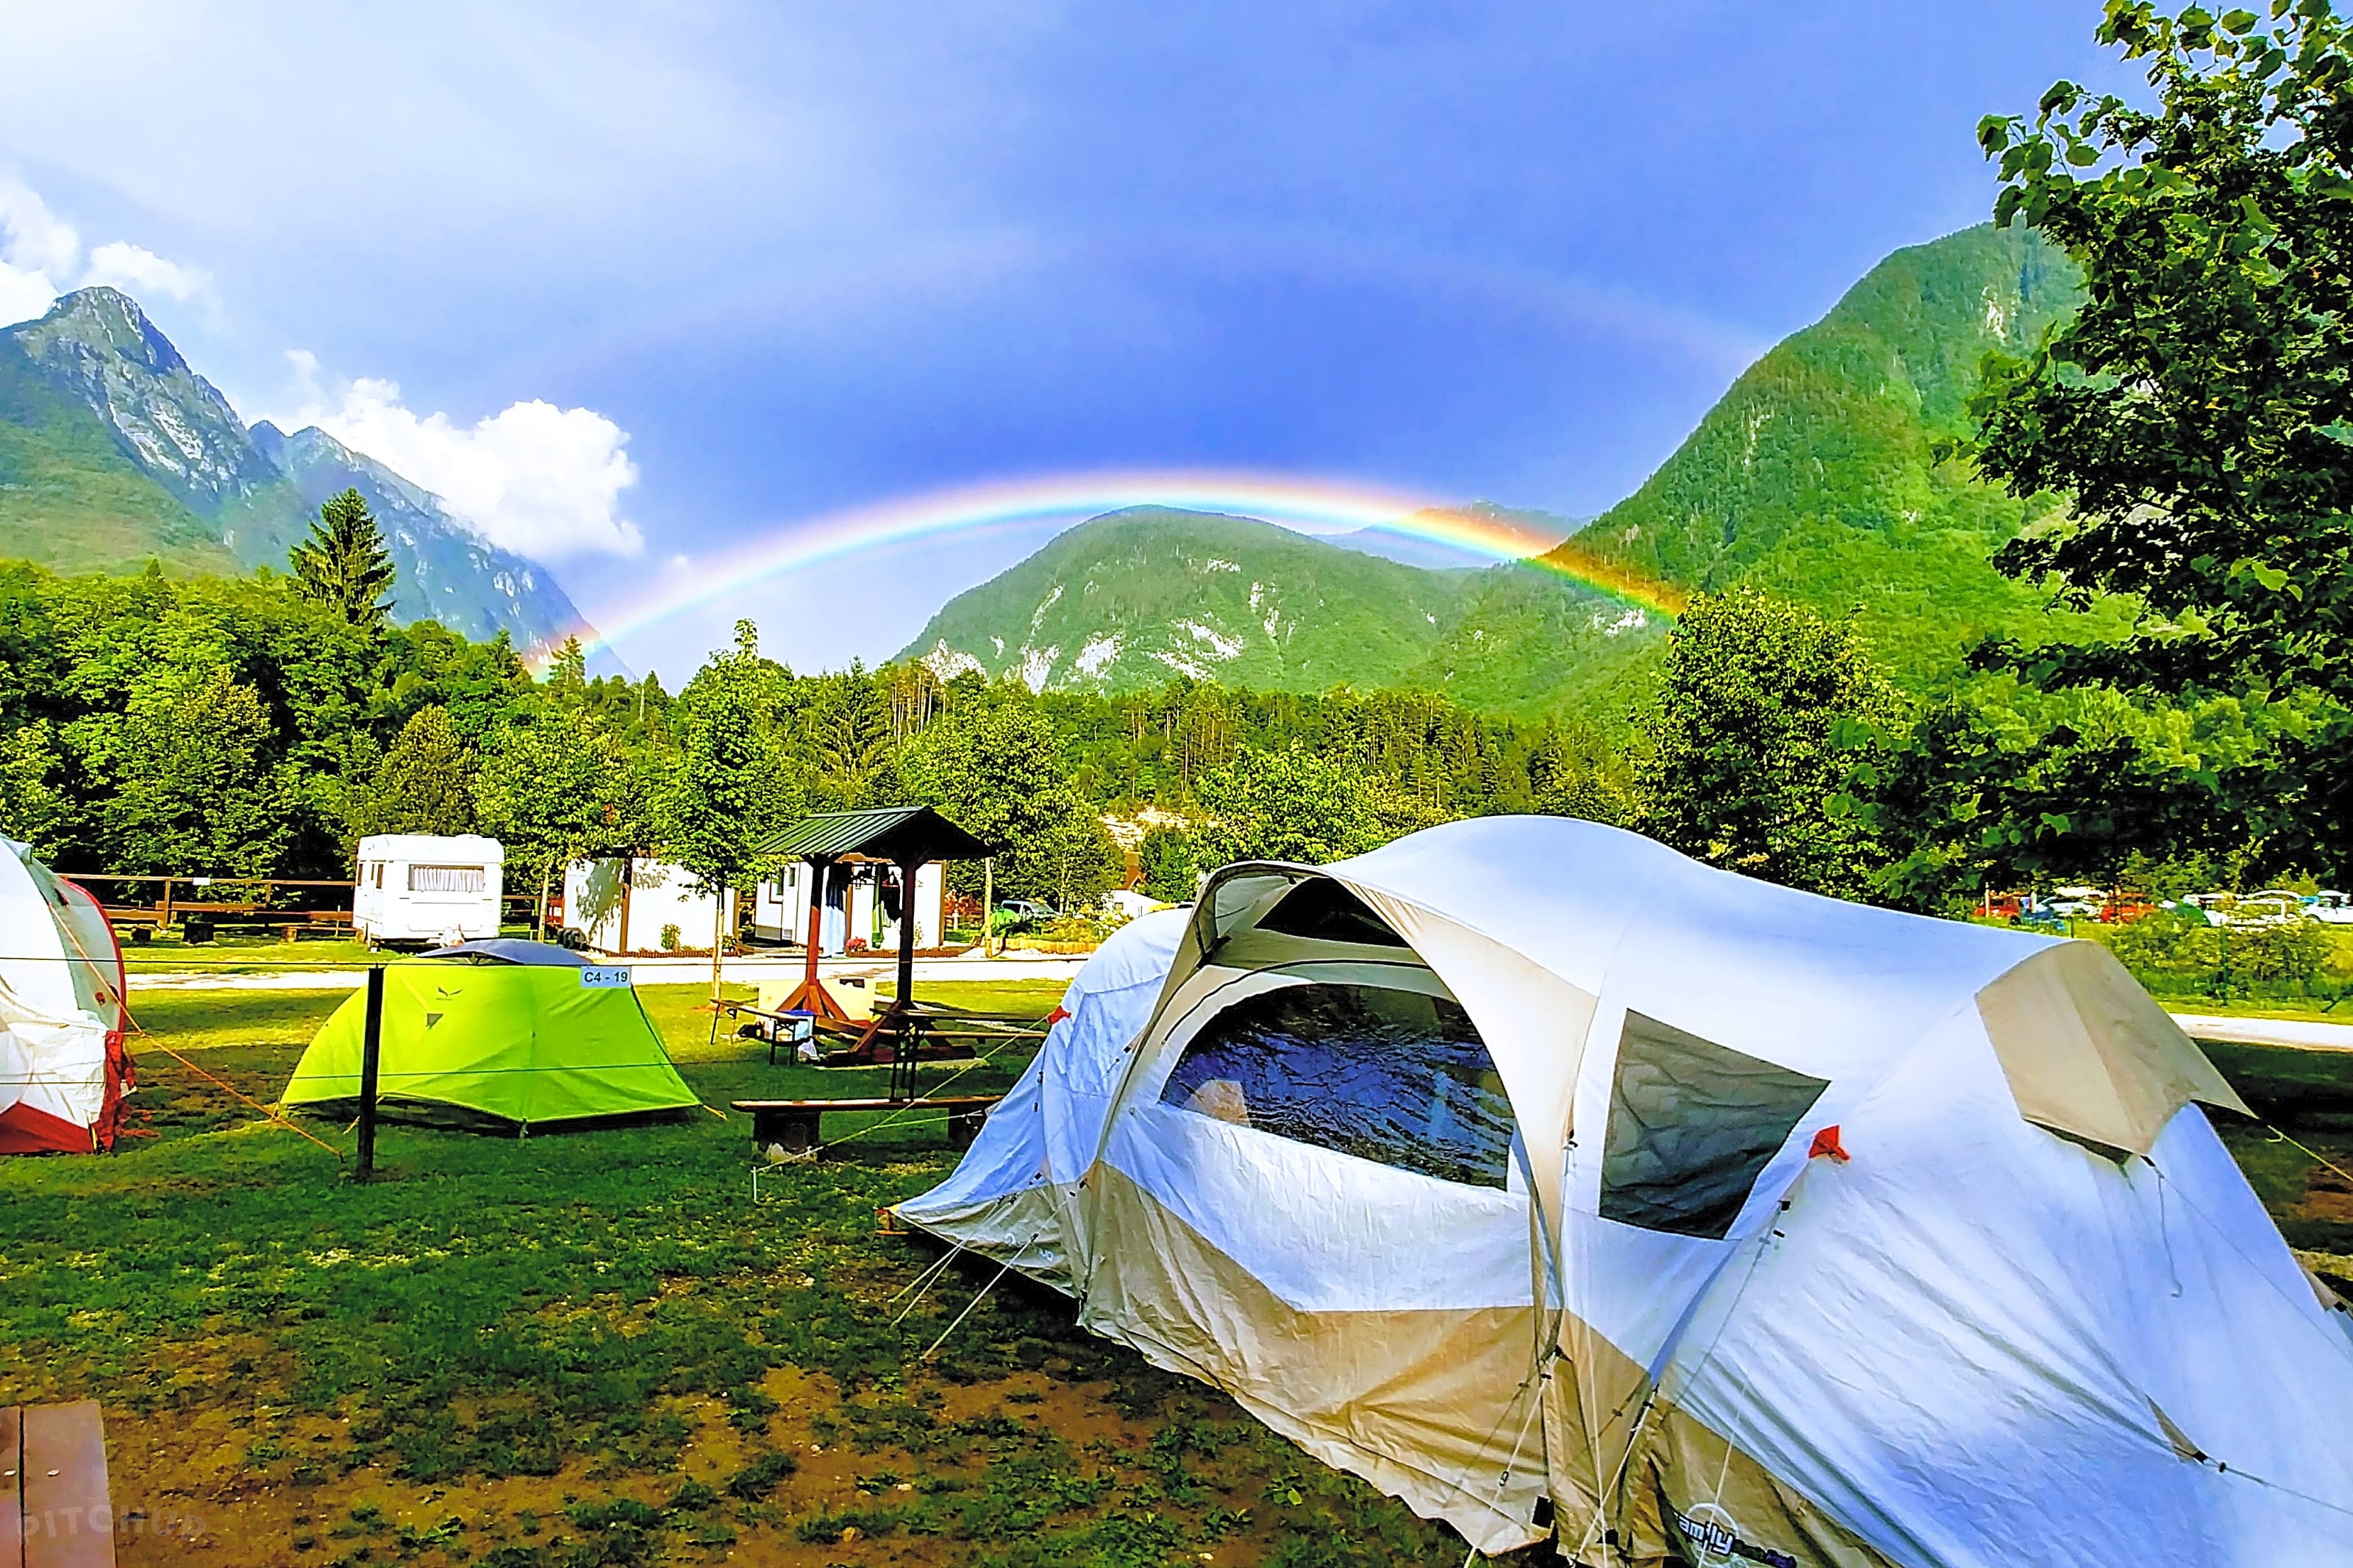 Обзор кемпинга. Палаточный лагерь Сочи. Глэмпинг красная Поляна в горах. Палатный лагерь в горах Сочи. Палаточный лагерь в горах.